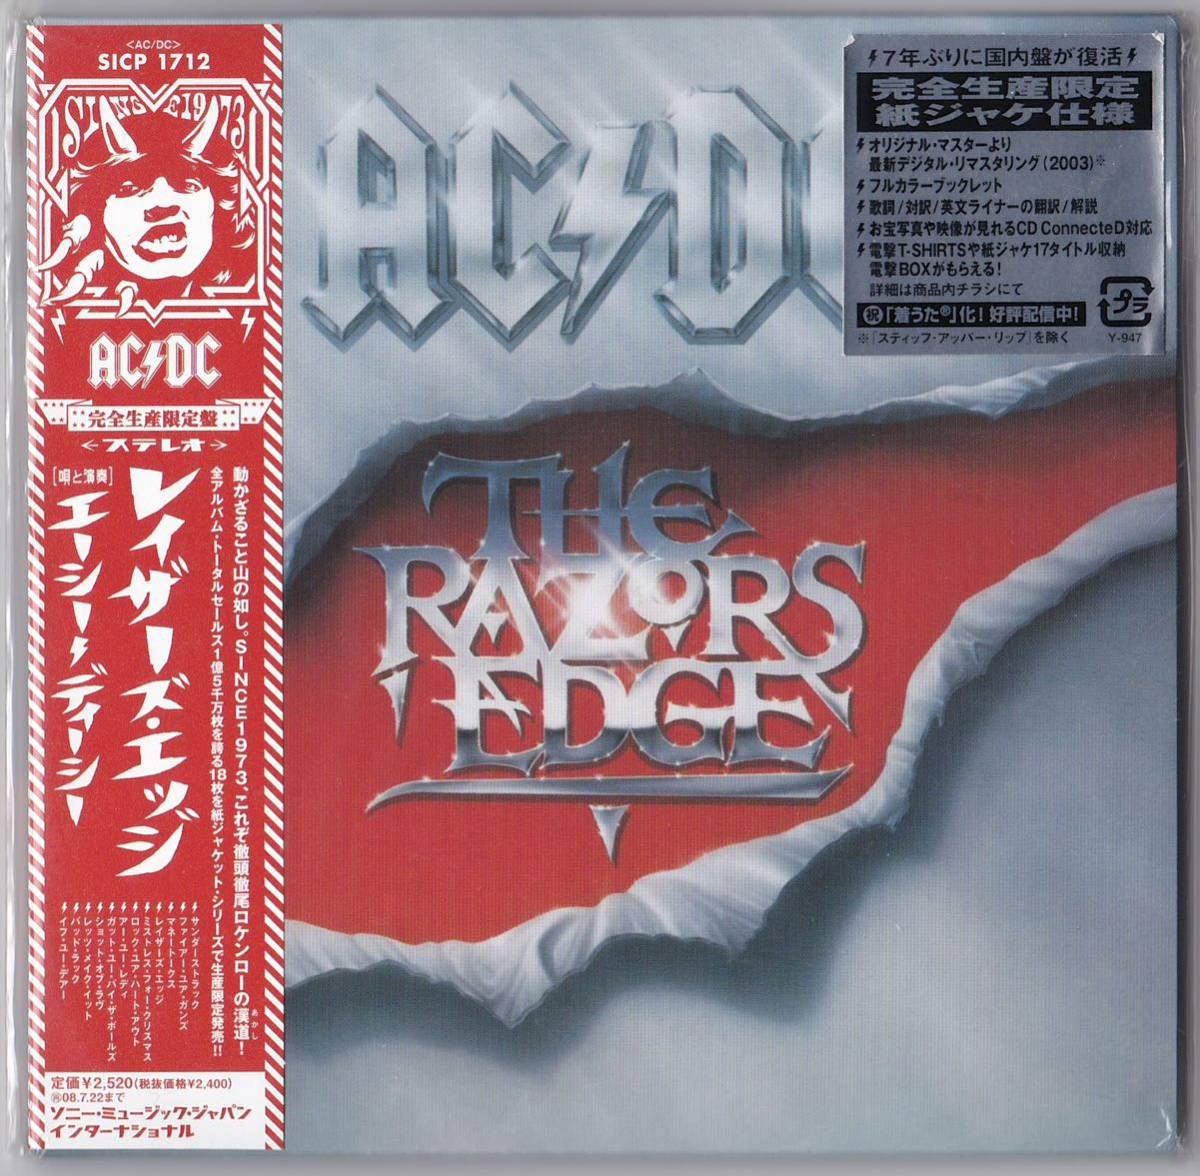 紙ジャケット仕様 AC/DC 「レーザーズ・エッジ」 THE RAZORS EDGE